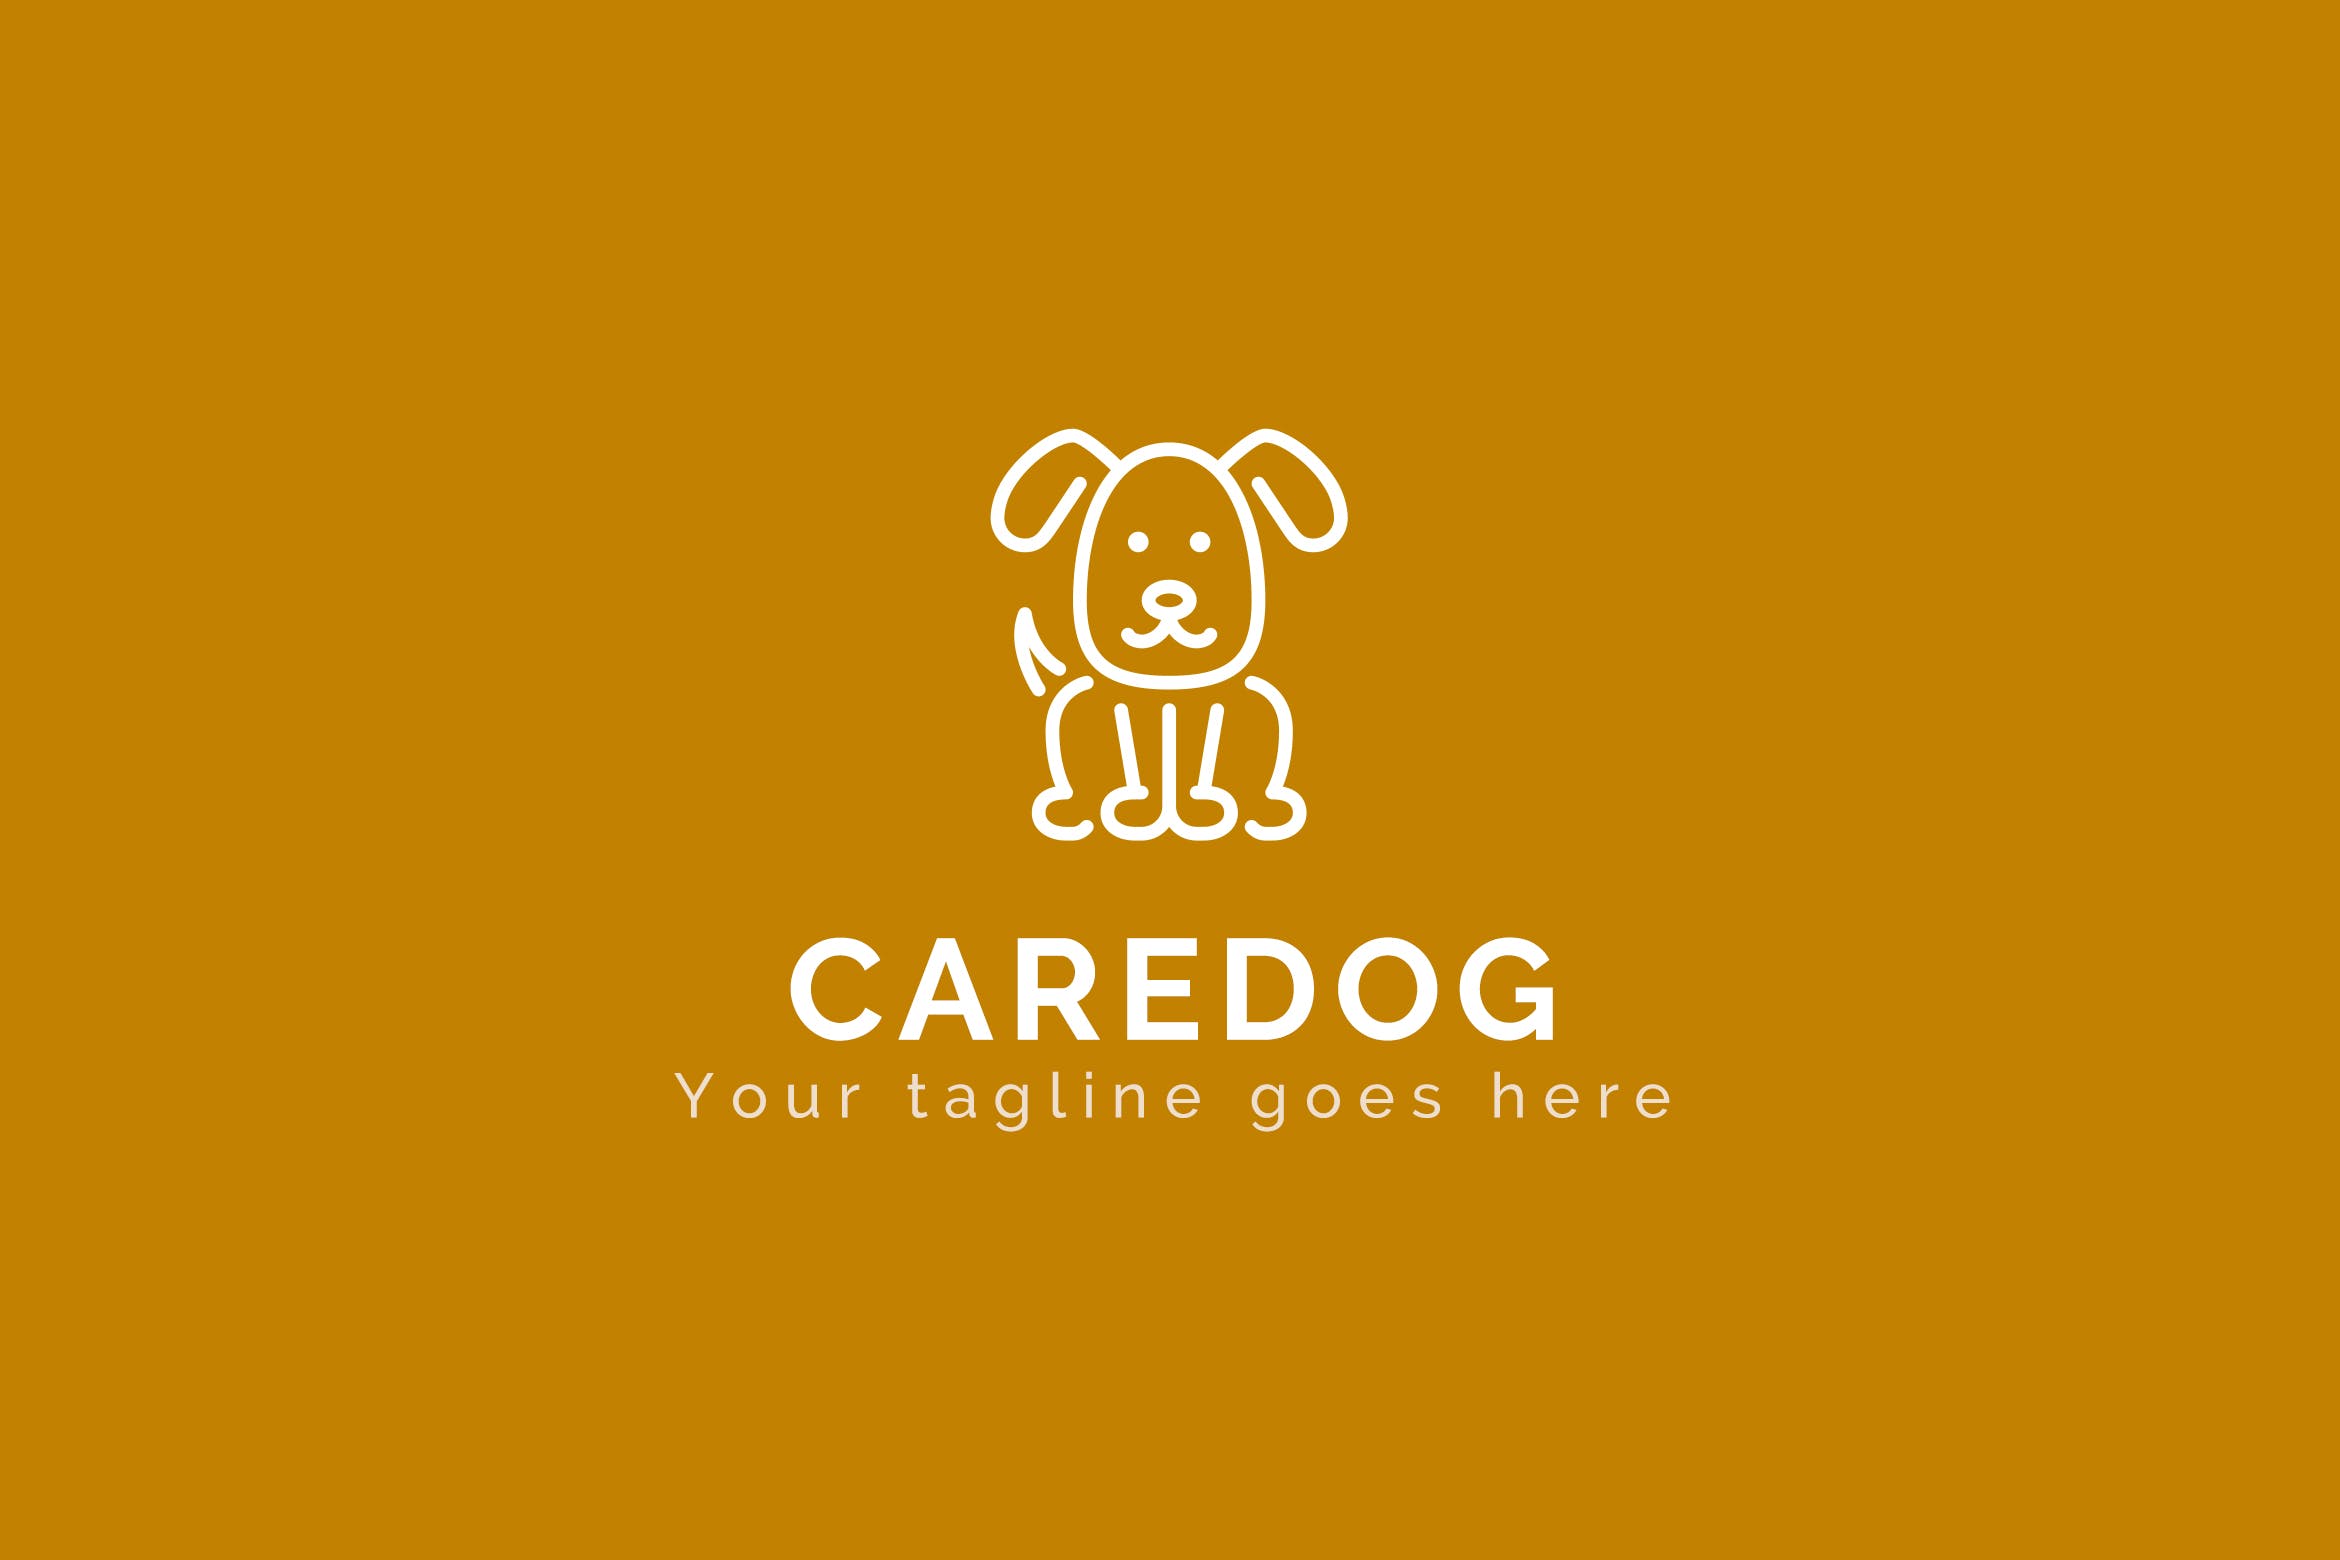 看护犬动物Logo设计素材中国精选模板 Caredog – Animal Logo Template插图